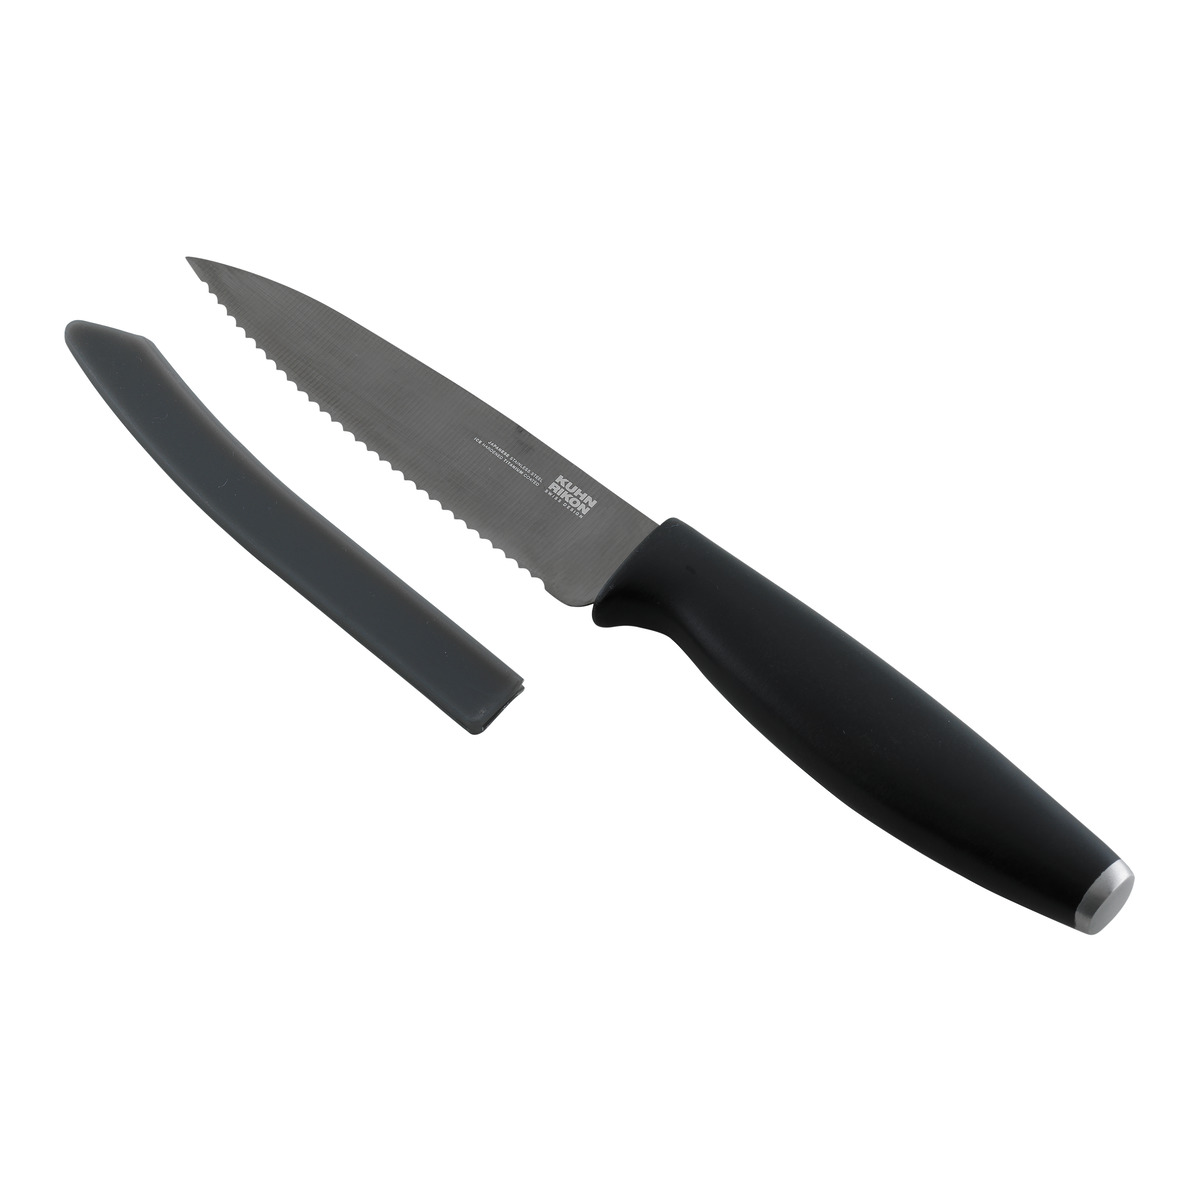 Kuhn Rikon - Colori(r) Titanium Serrated Paring Knife Black